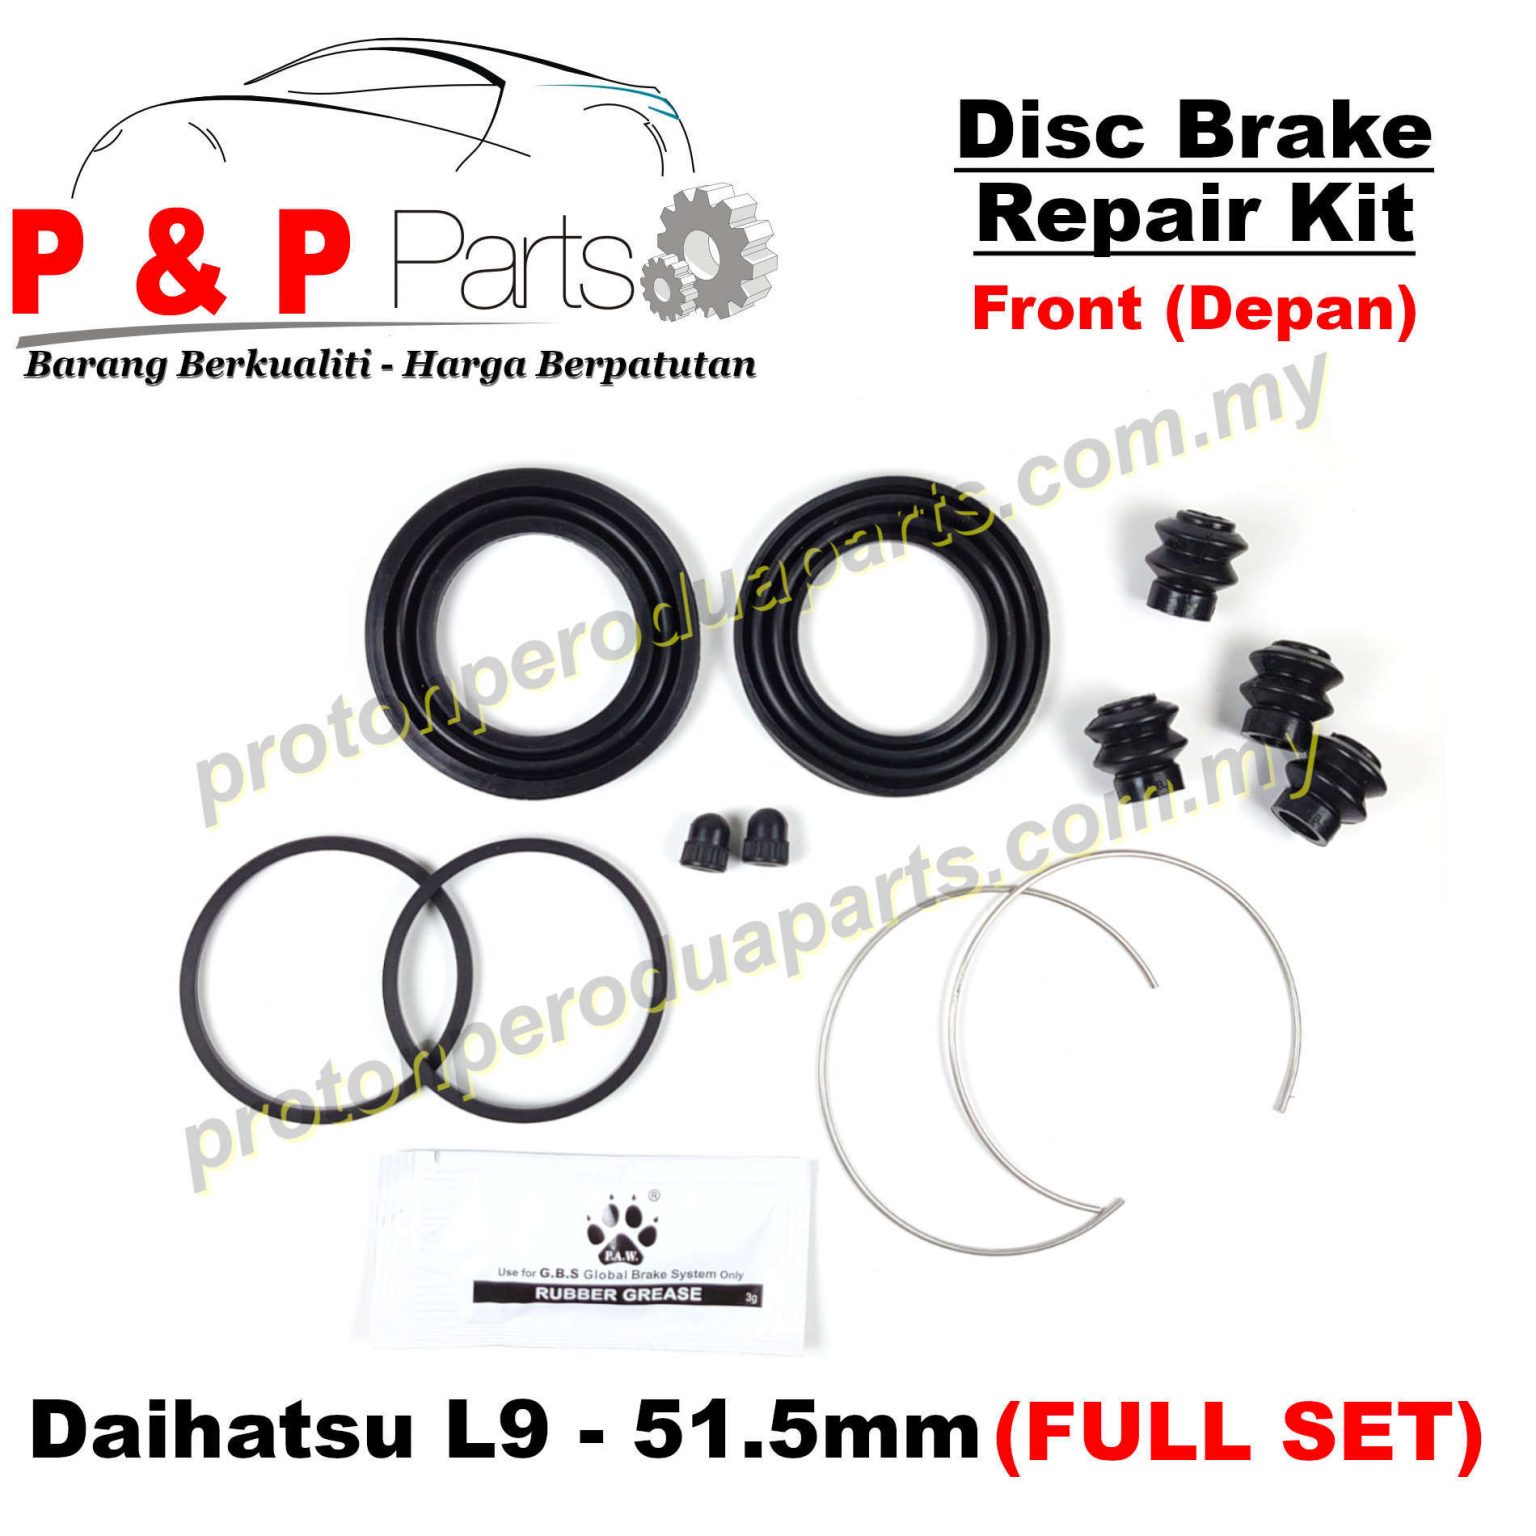 Front Disc Brake Caliper Rebuild / Repair Kit for Daihatsu L9  51.5mm